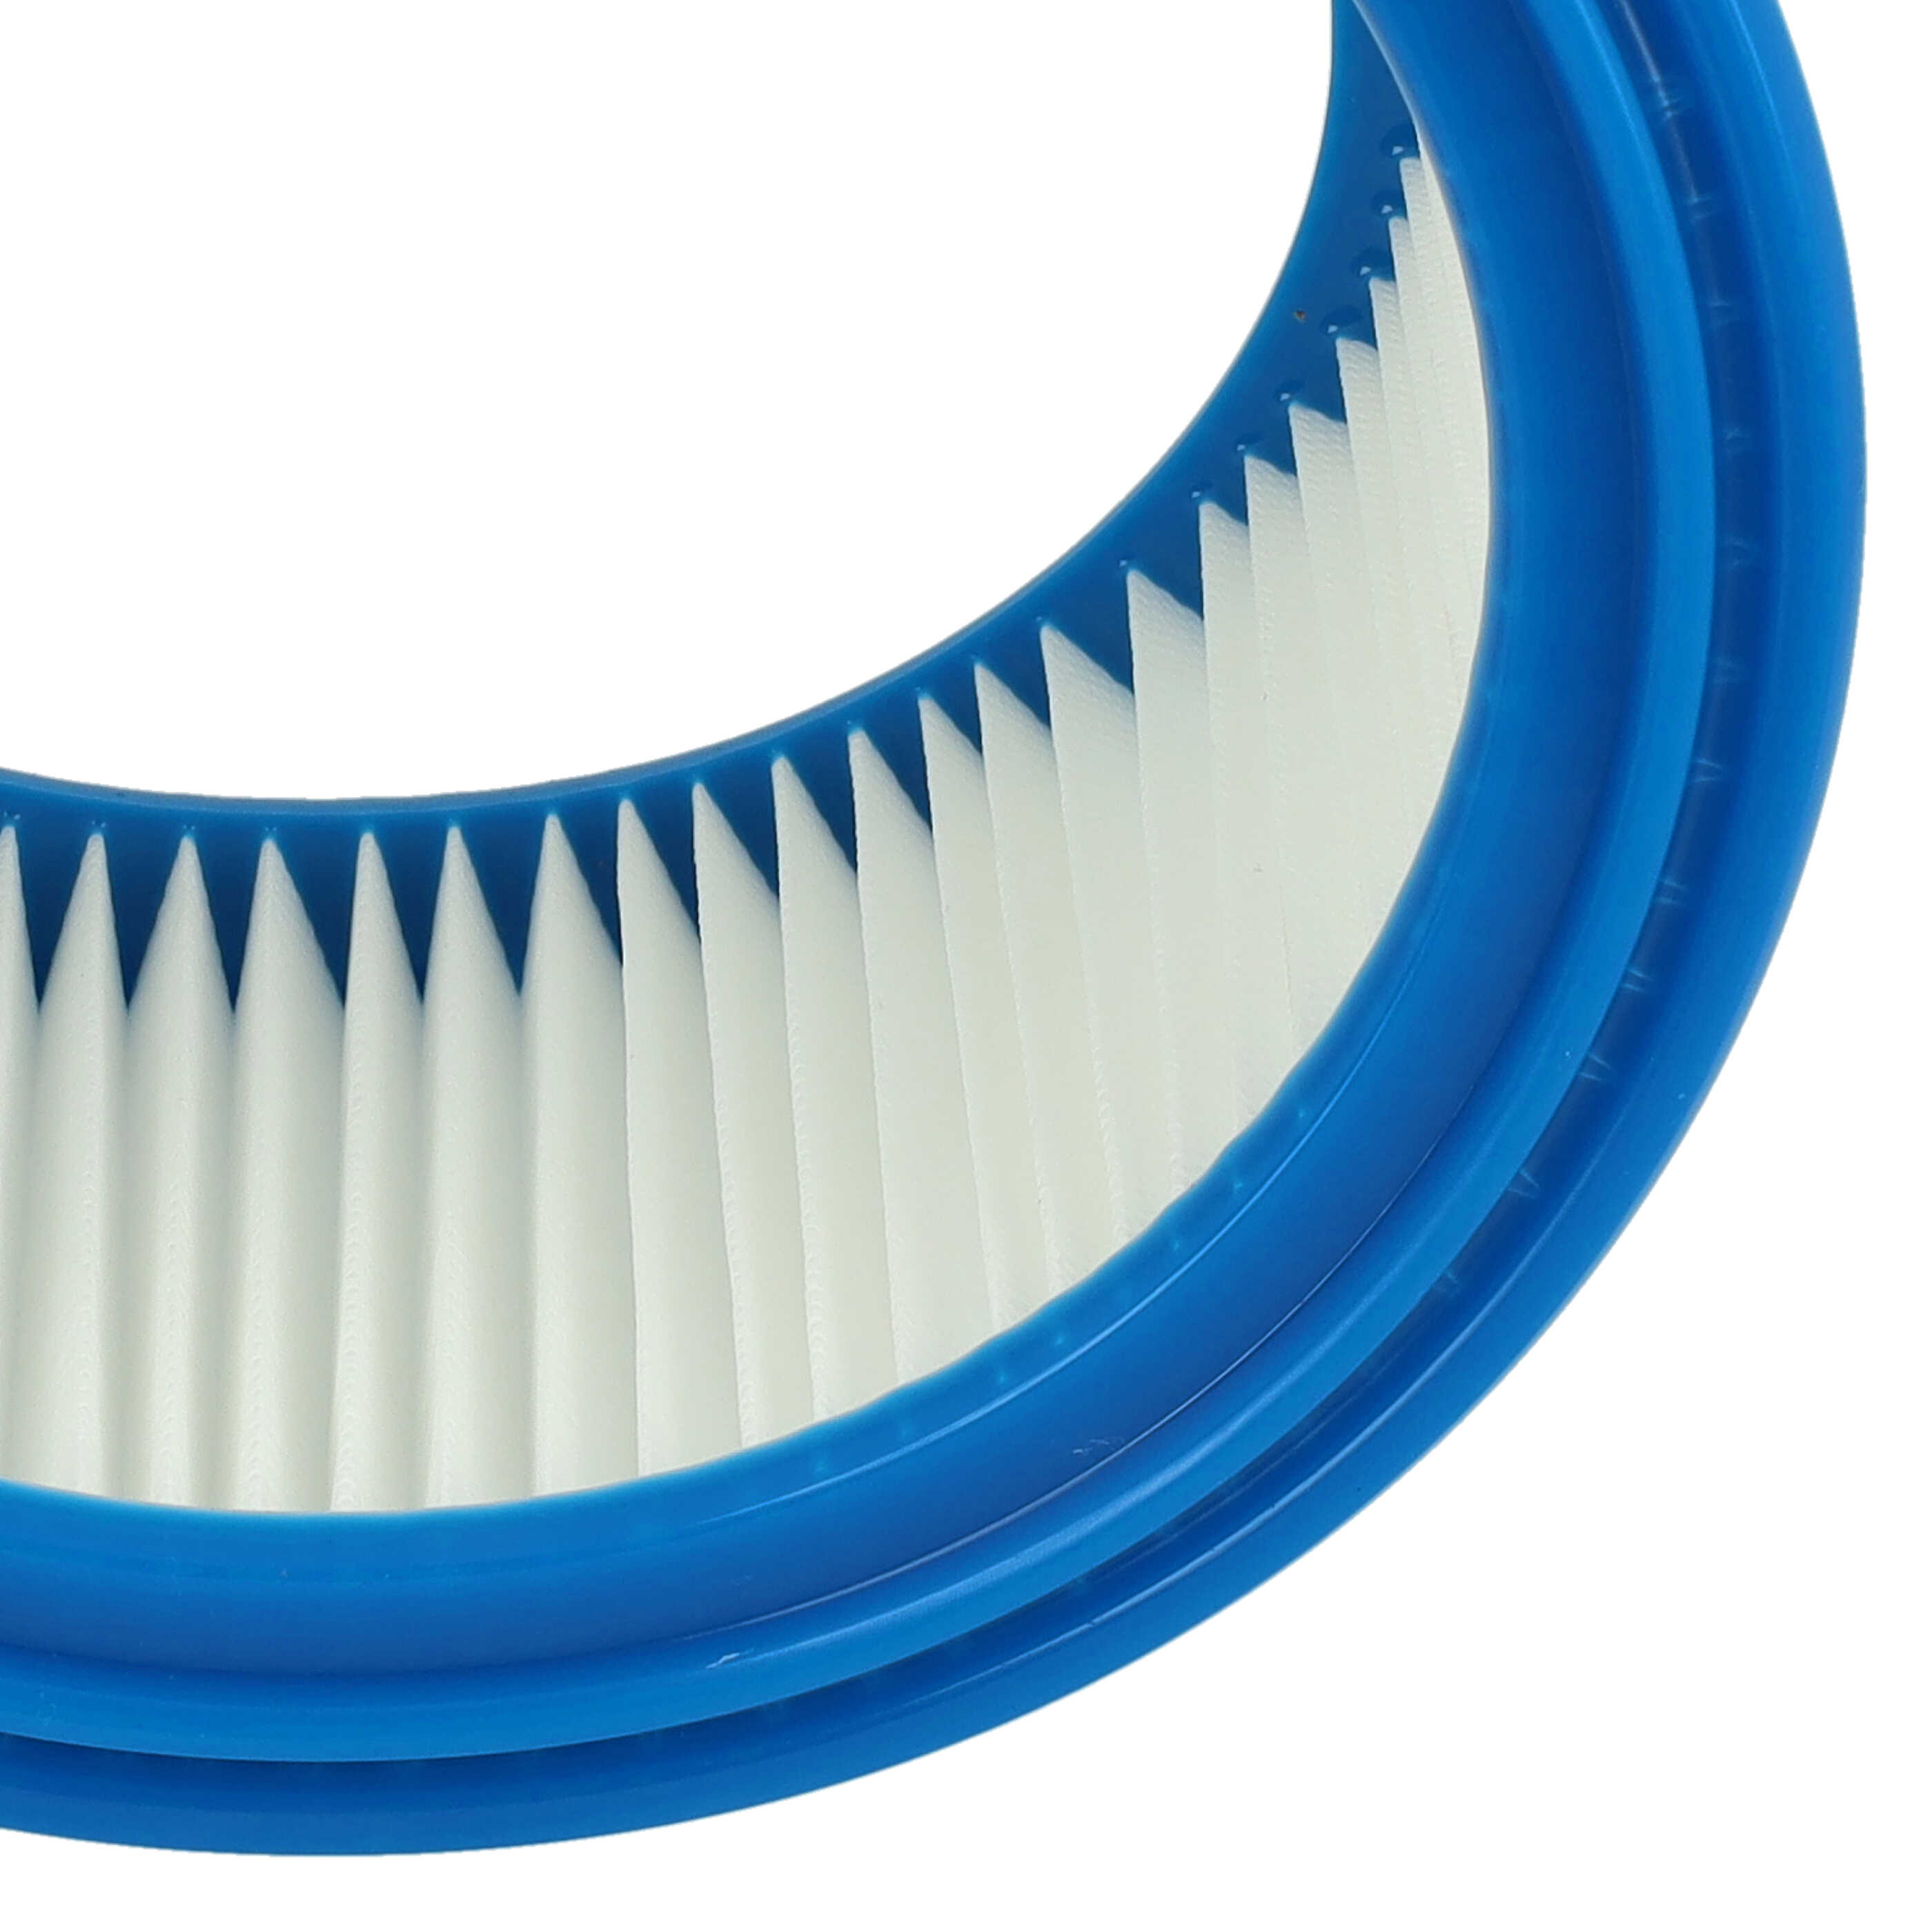 Filtro reemplaza Bosch 2607432024 para aspiradora - filtro redondo, blanco / azul